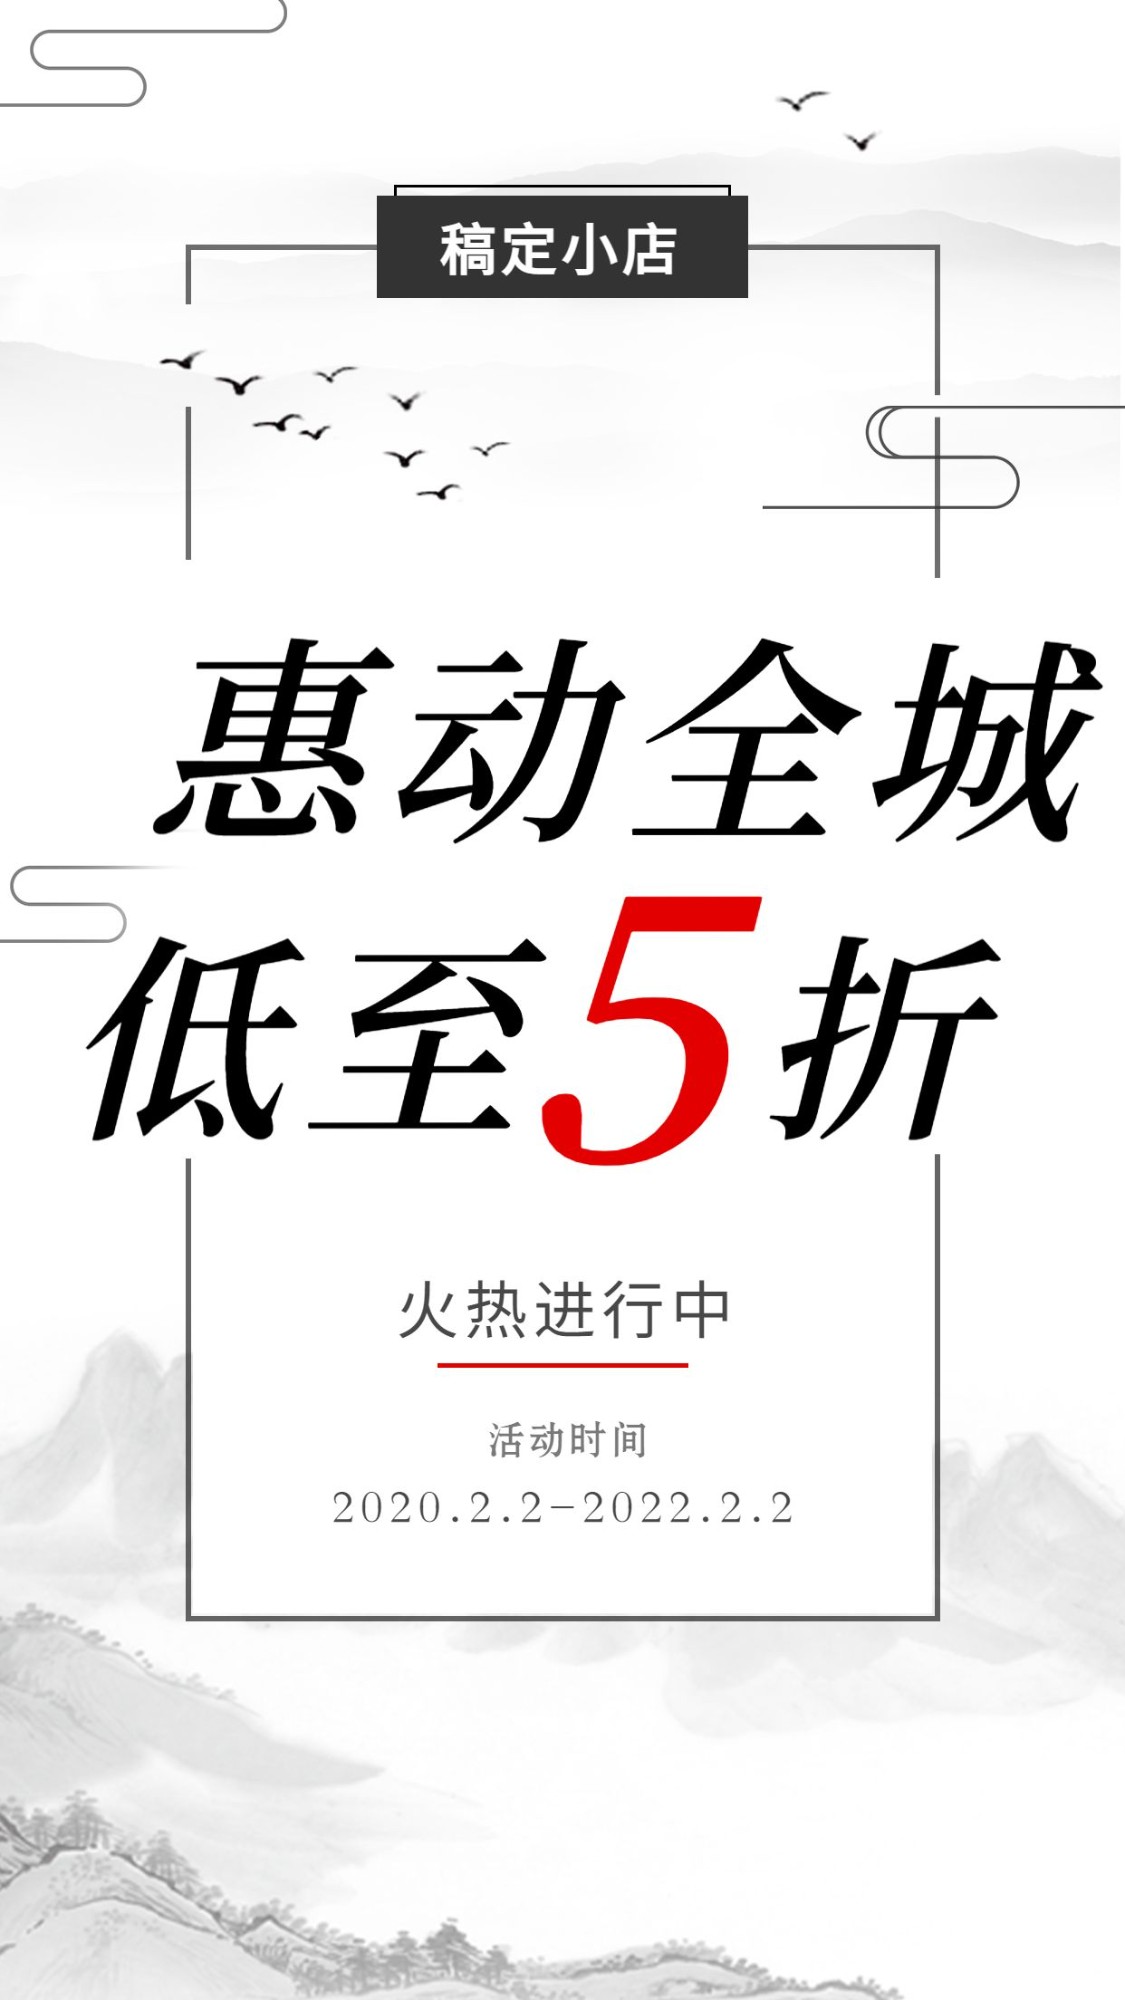 促销活动中国风手机海报